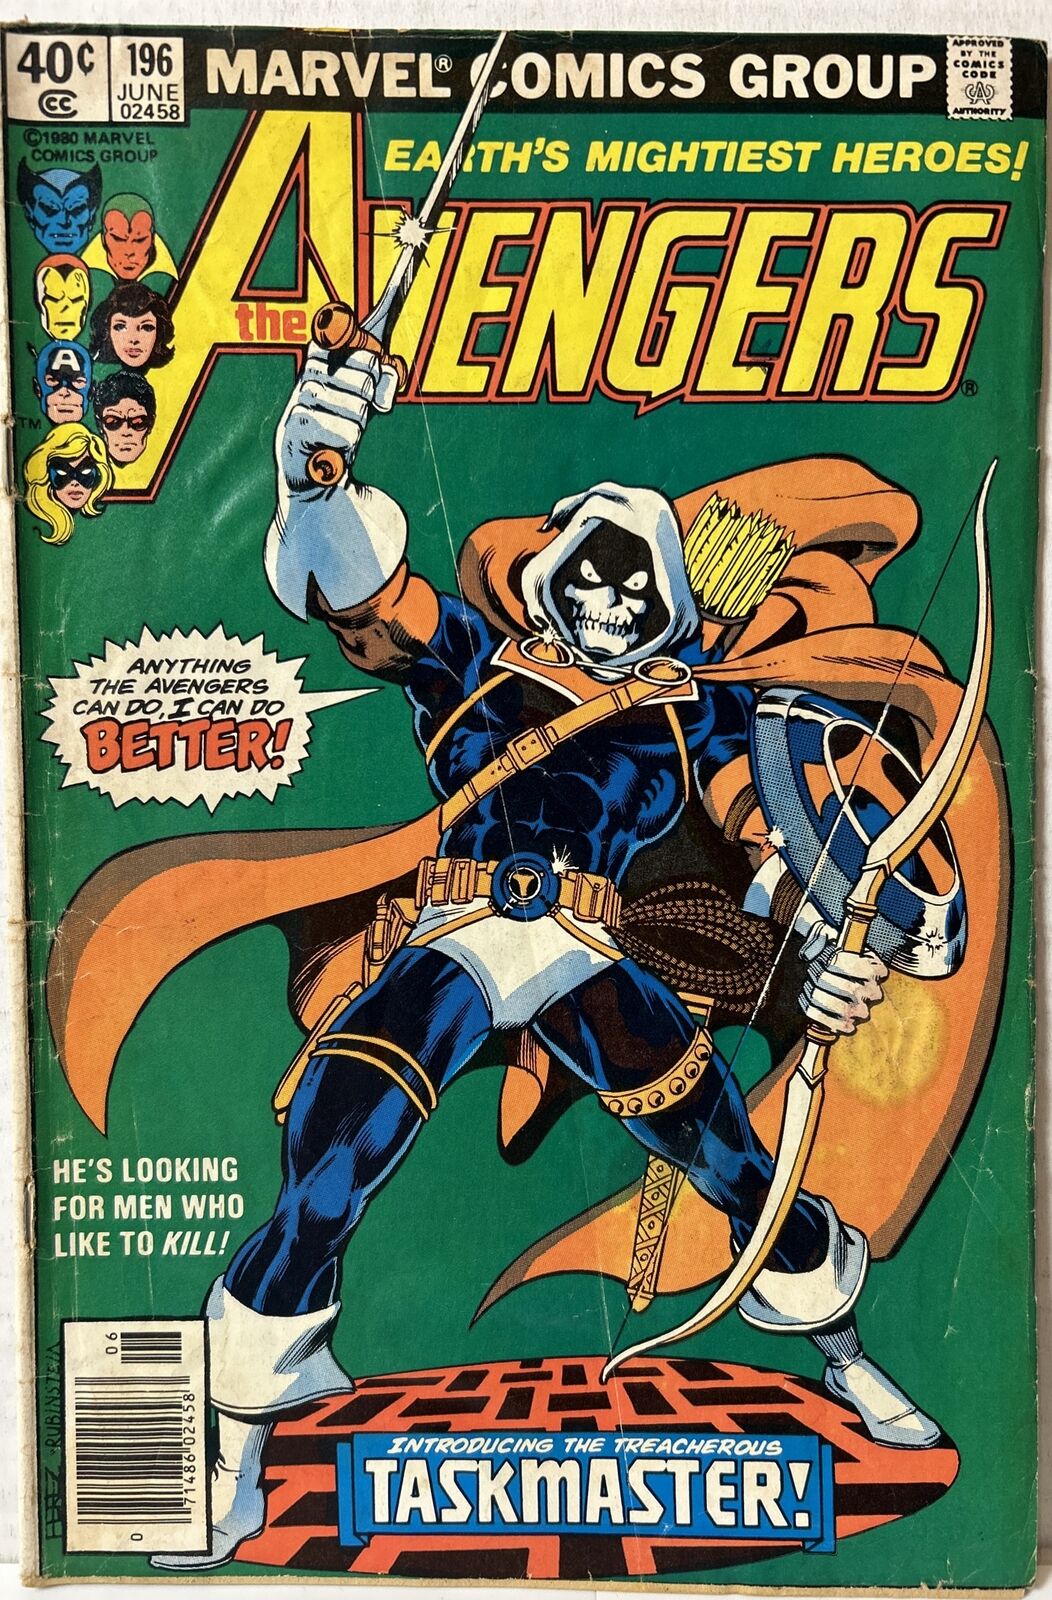 Avengers # 196 - Newsstand cover - 1st full Taskmaster - Marvel Comics - 1980